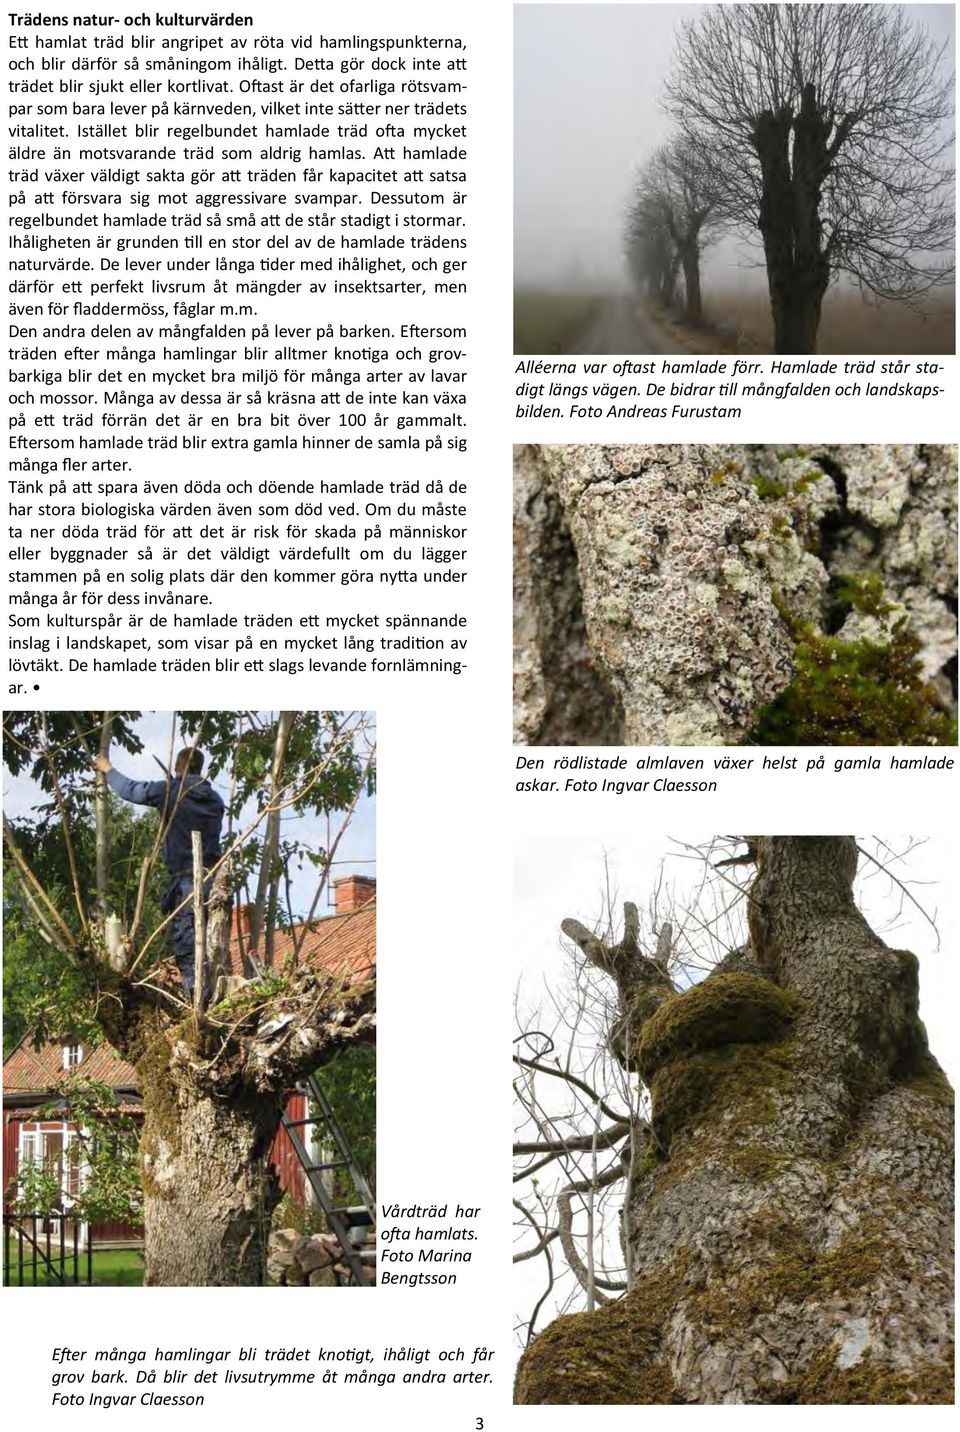 Att hamlade träd växer väldigt sakta gör att träden får kapacitet att satsa på att försvara sig mot aggressivare svampar. Dessutom är regelbundet hamlade träd så små att de står stadigt i stormar.